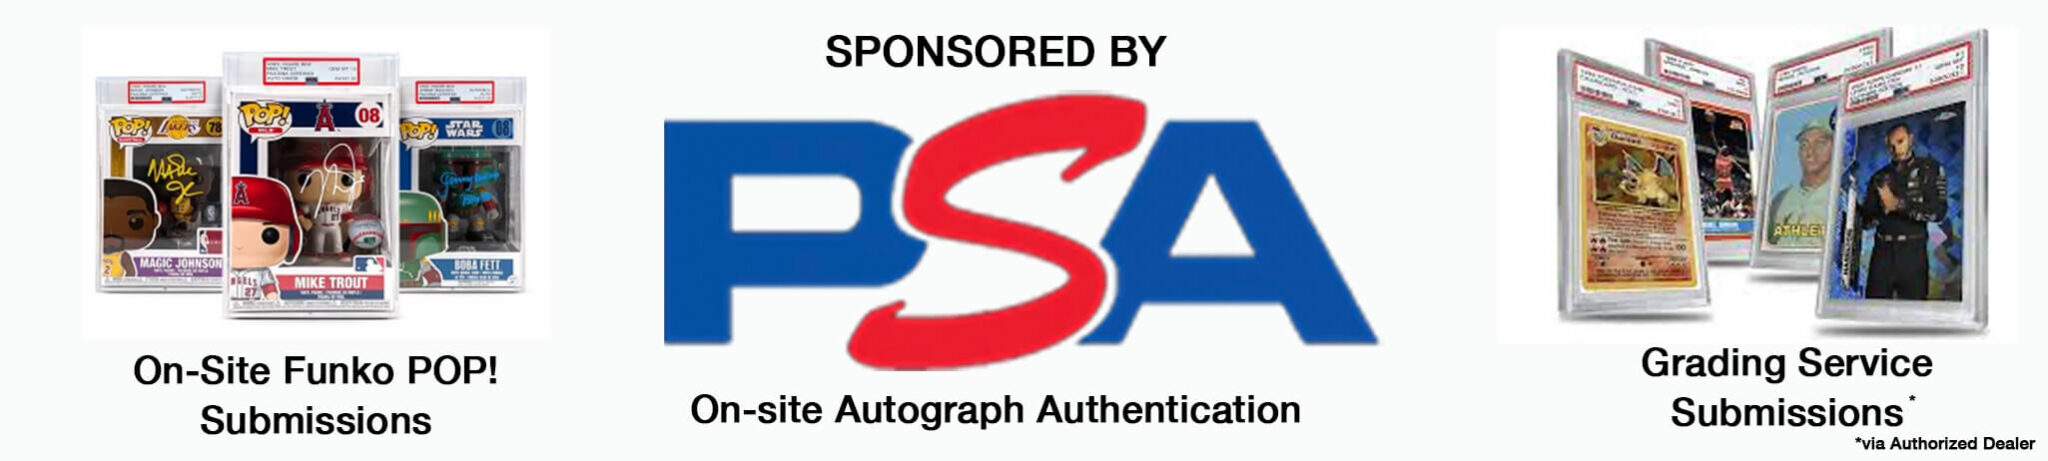 PSA lead sponsor banner